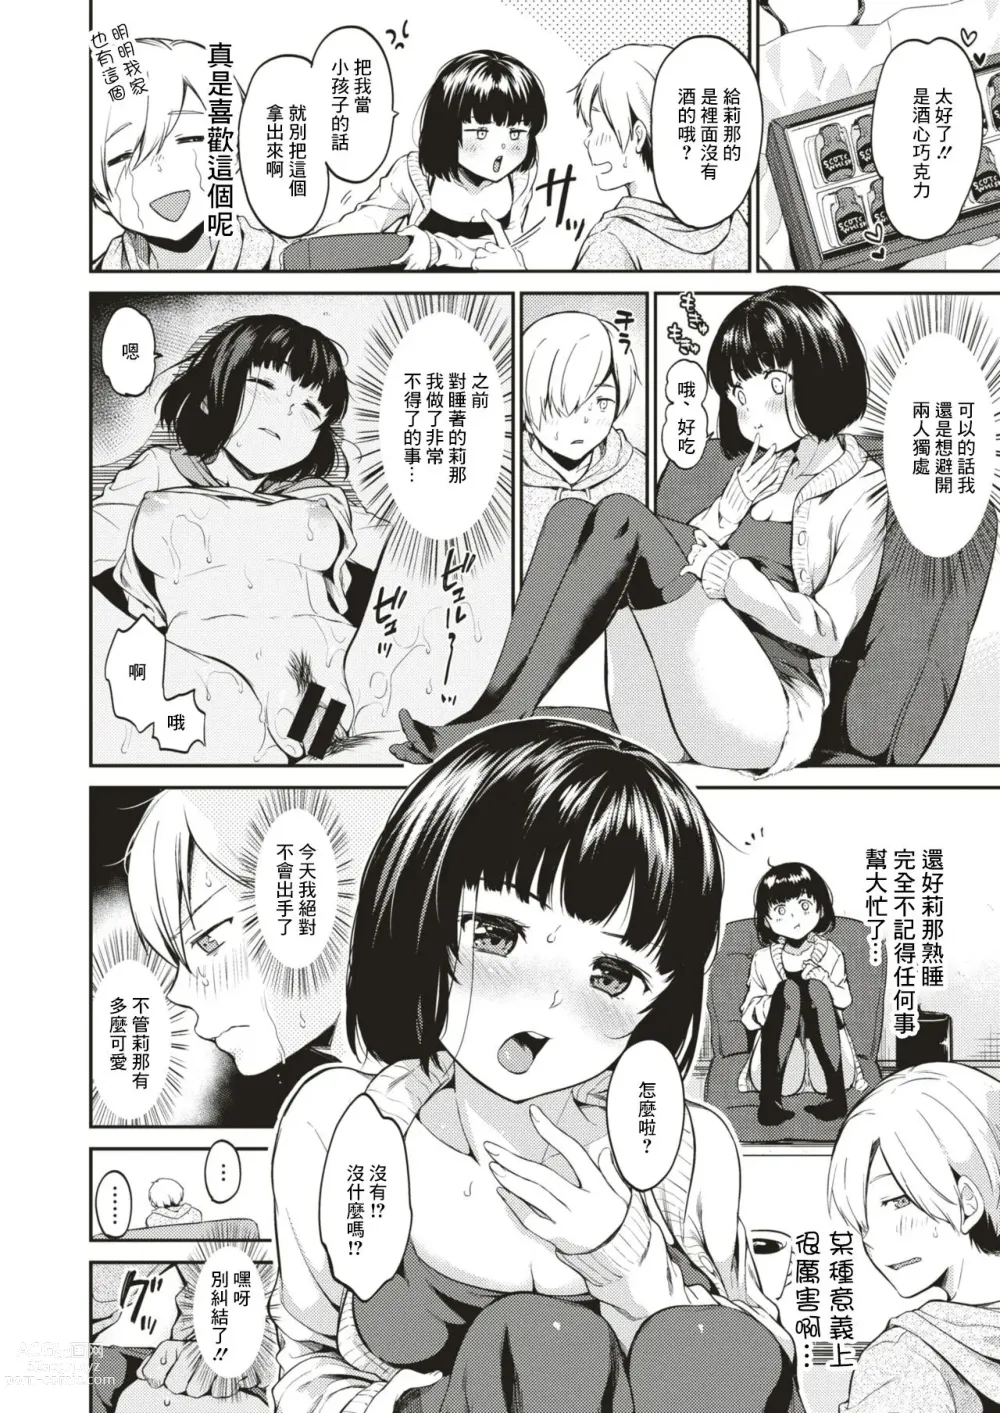 Page 2 of manga Yodare no Hoshi